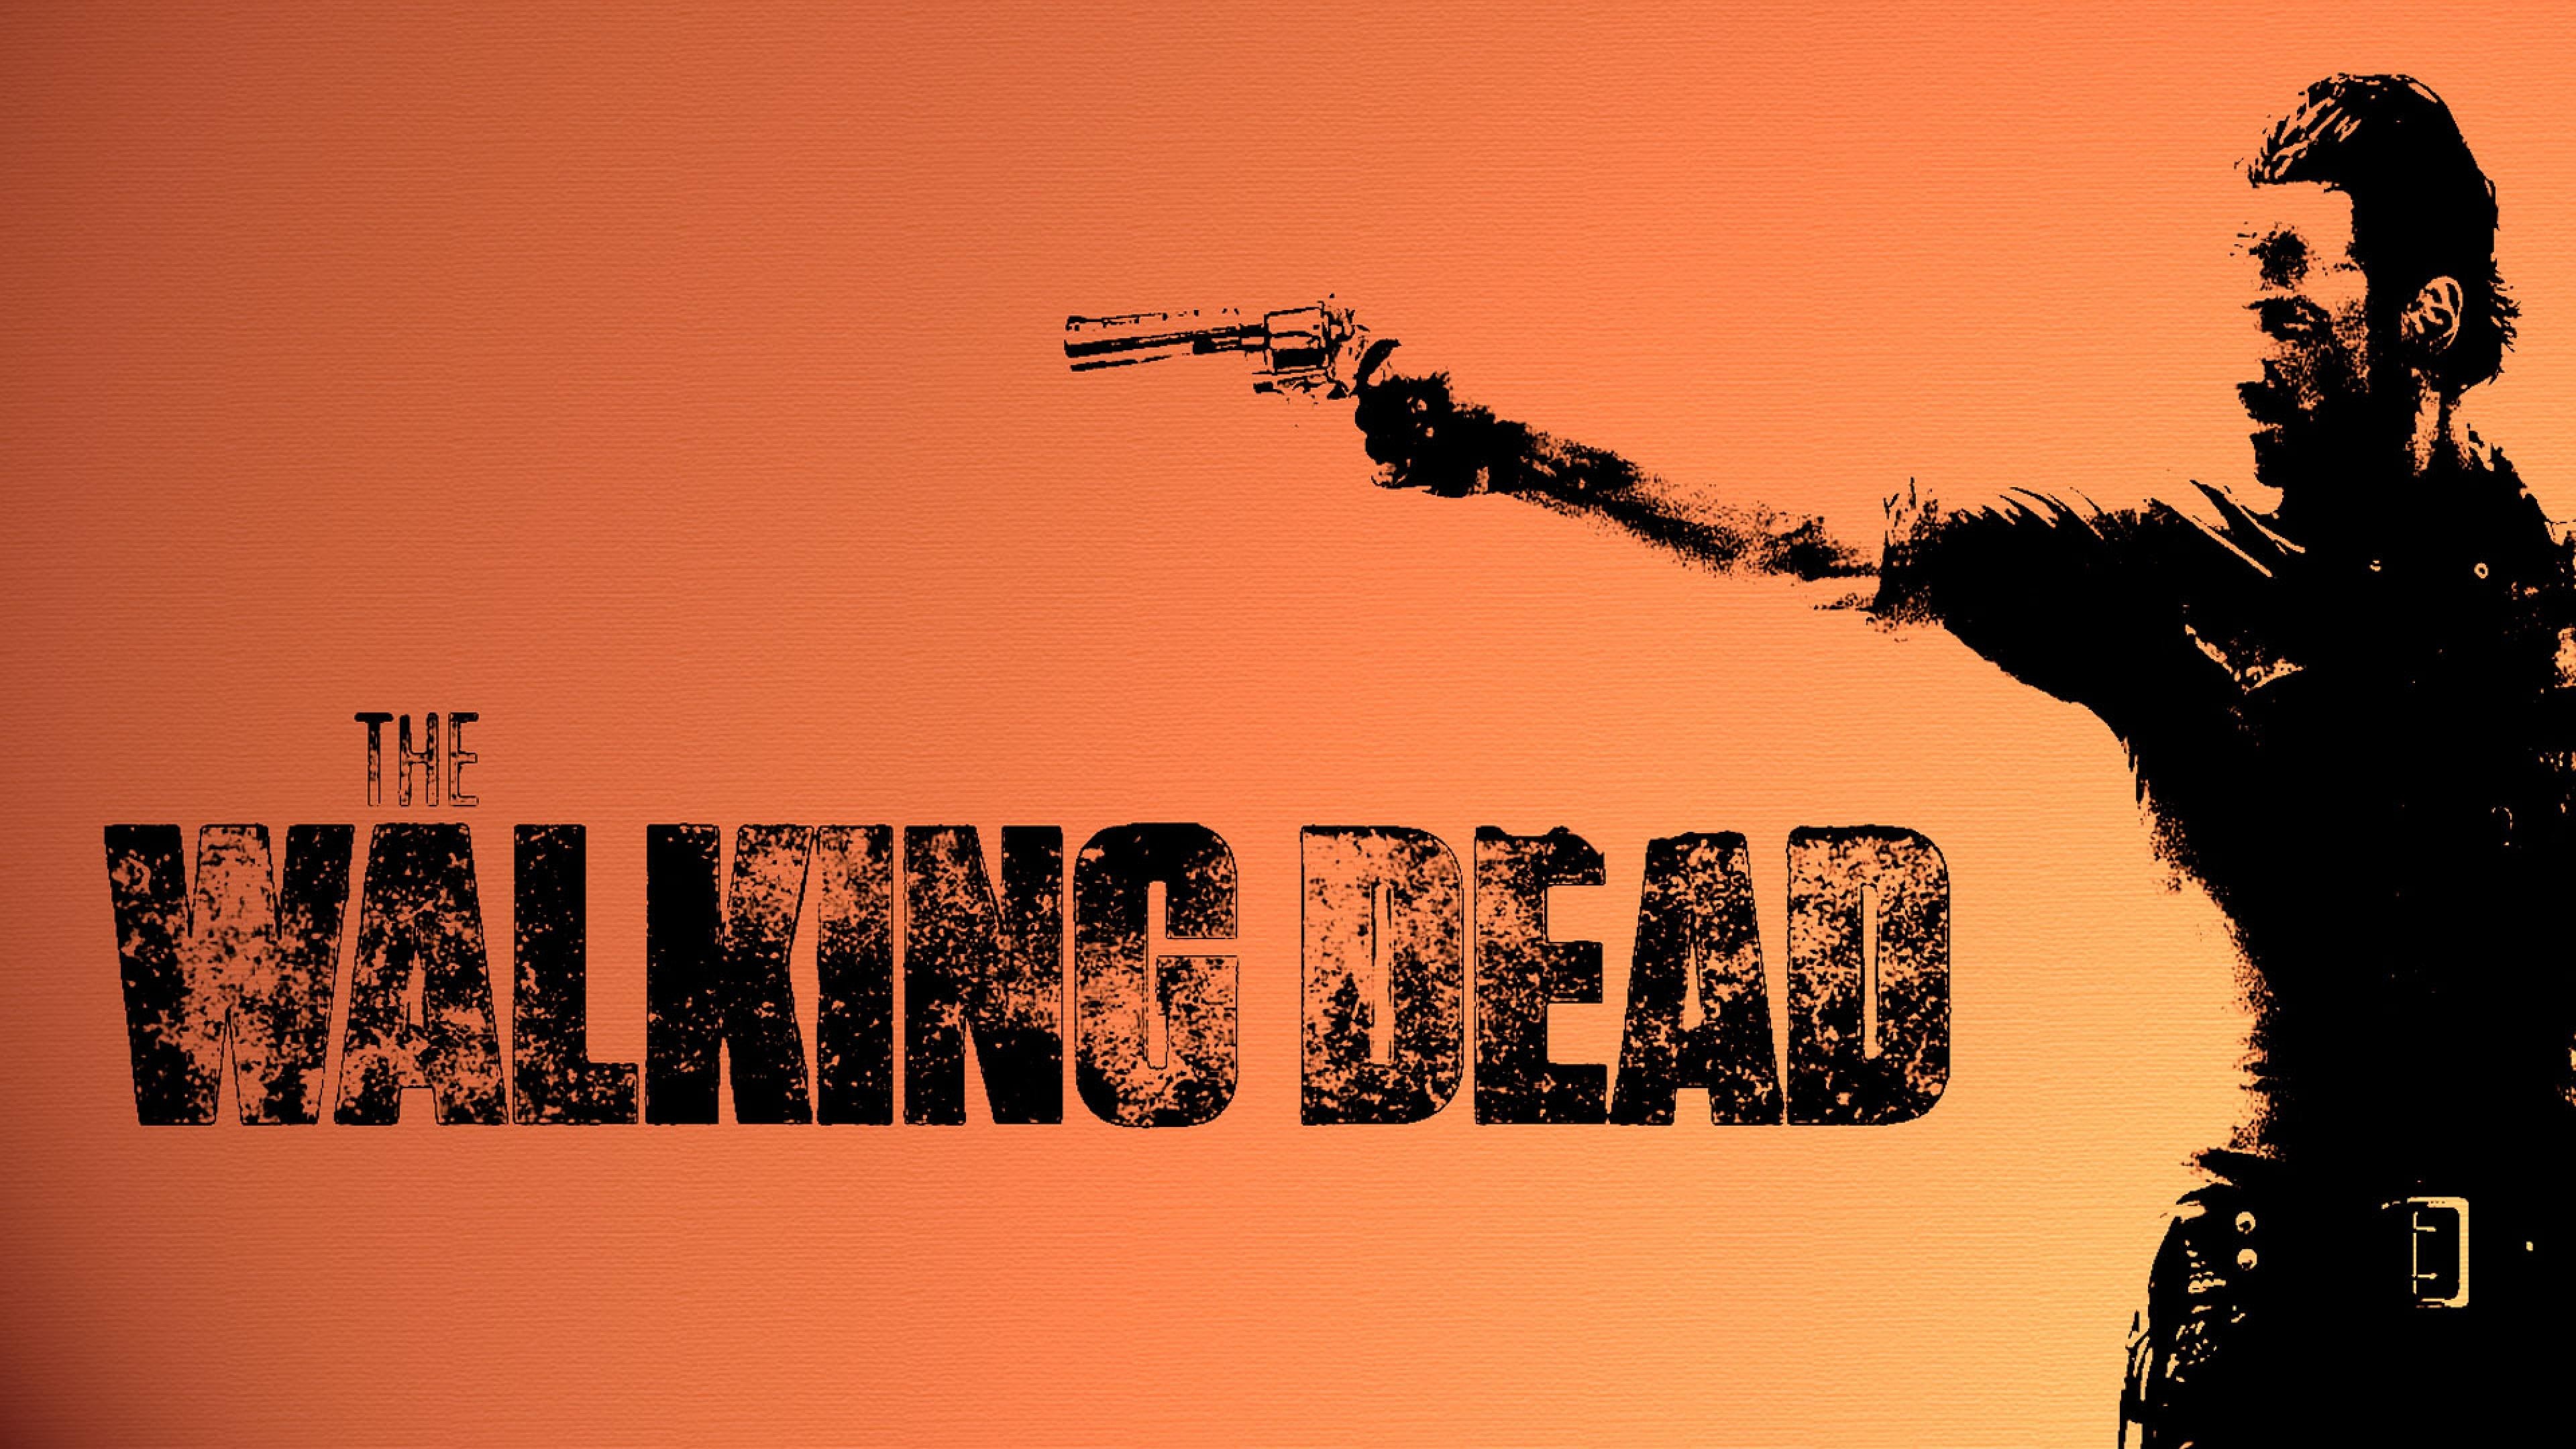 3840x2160 The Walking Dead wallaper ultra hd. The Walking Dead wallpaper